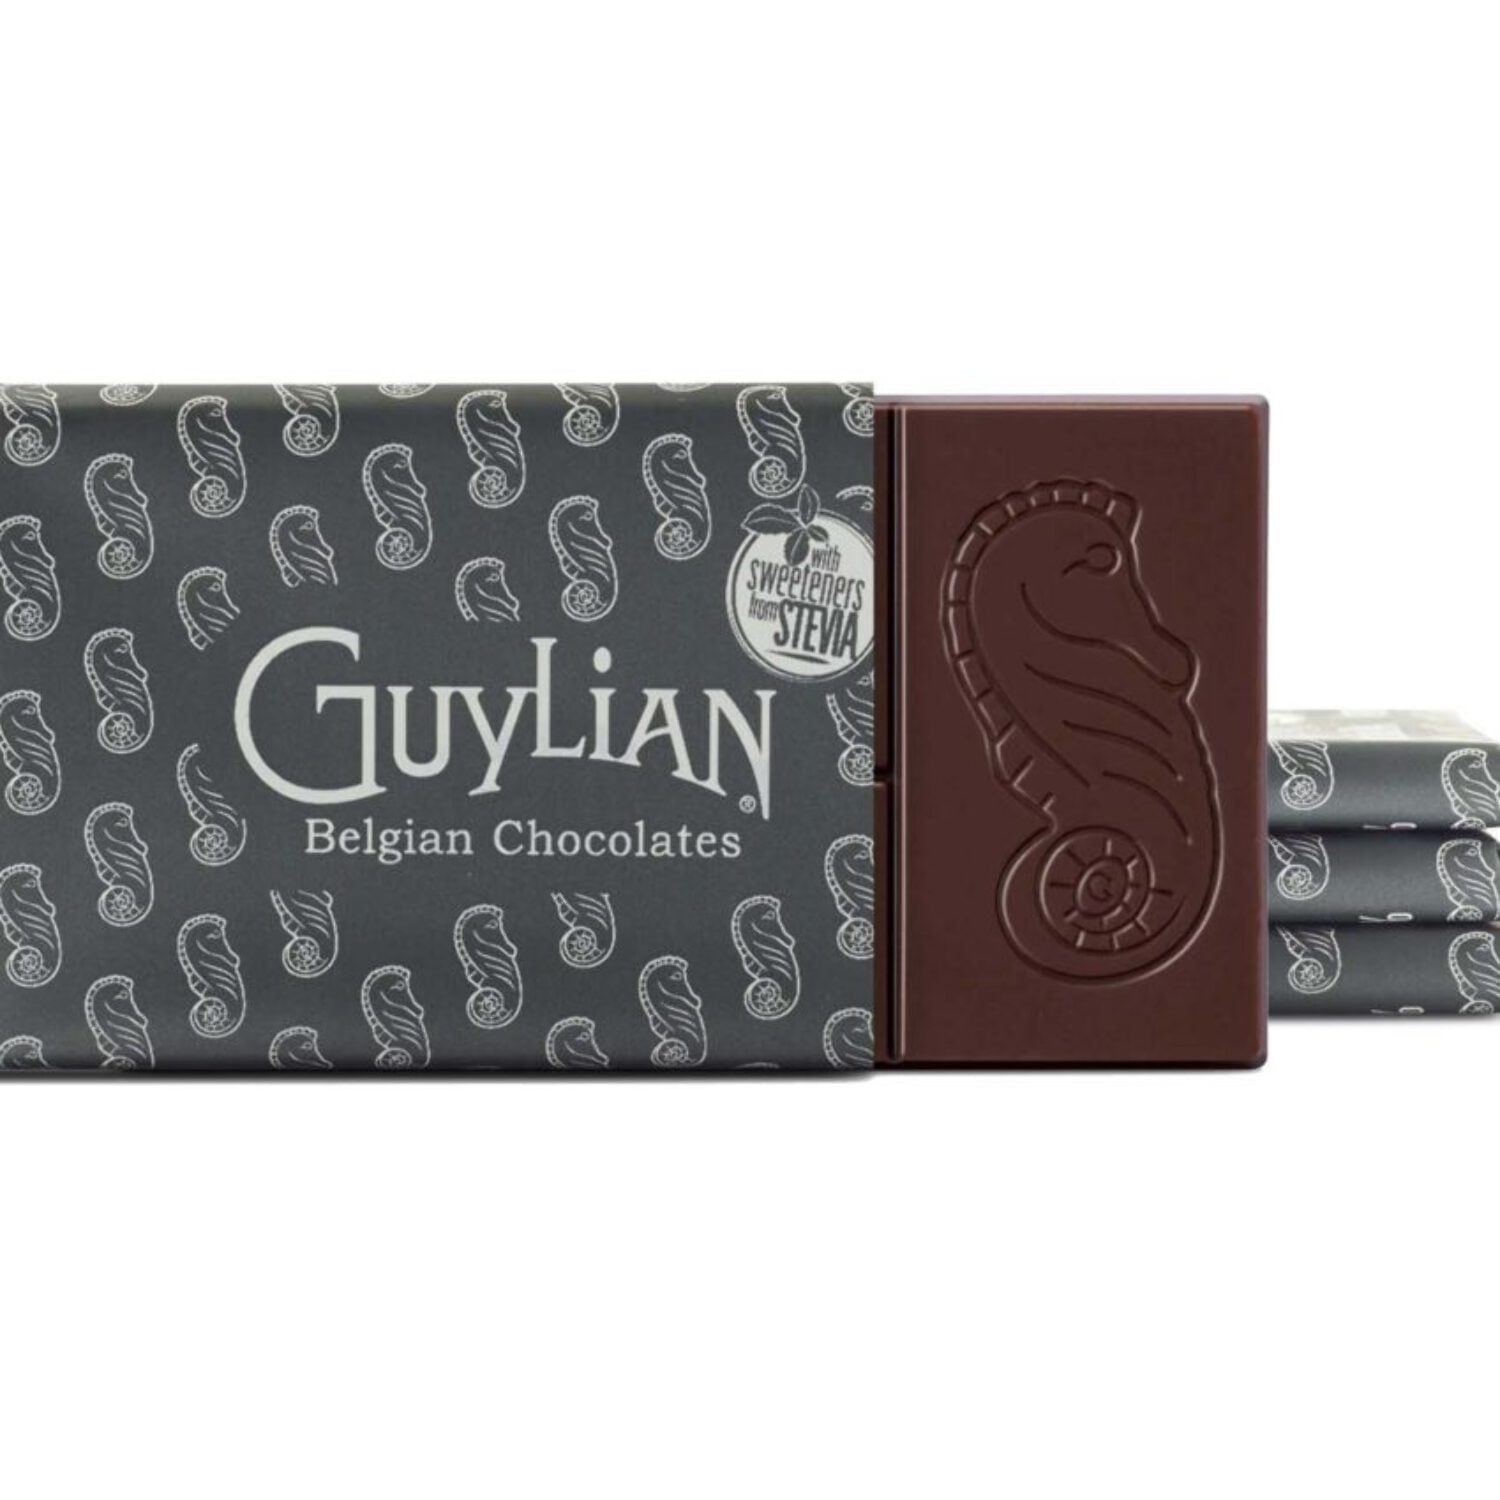 New Guylian Chocolate Bars